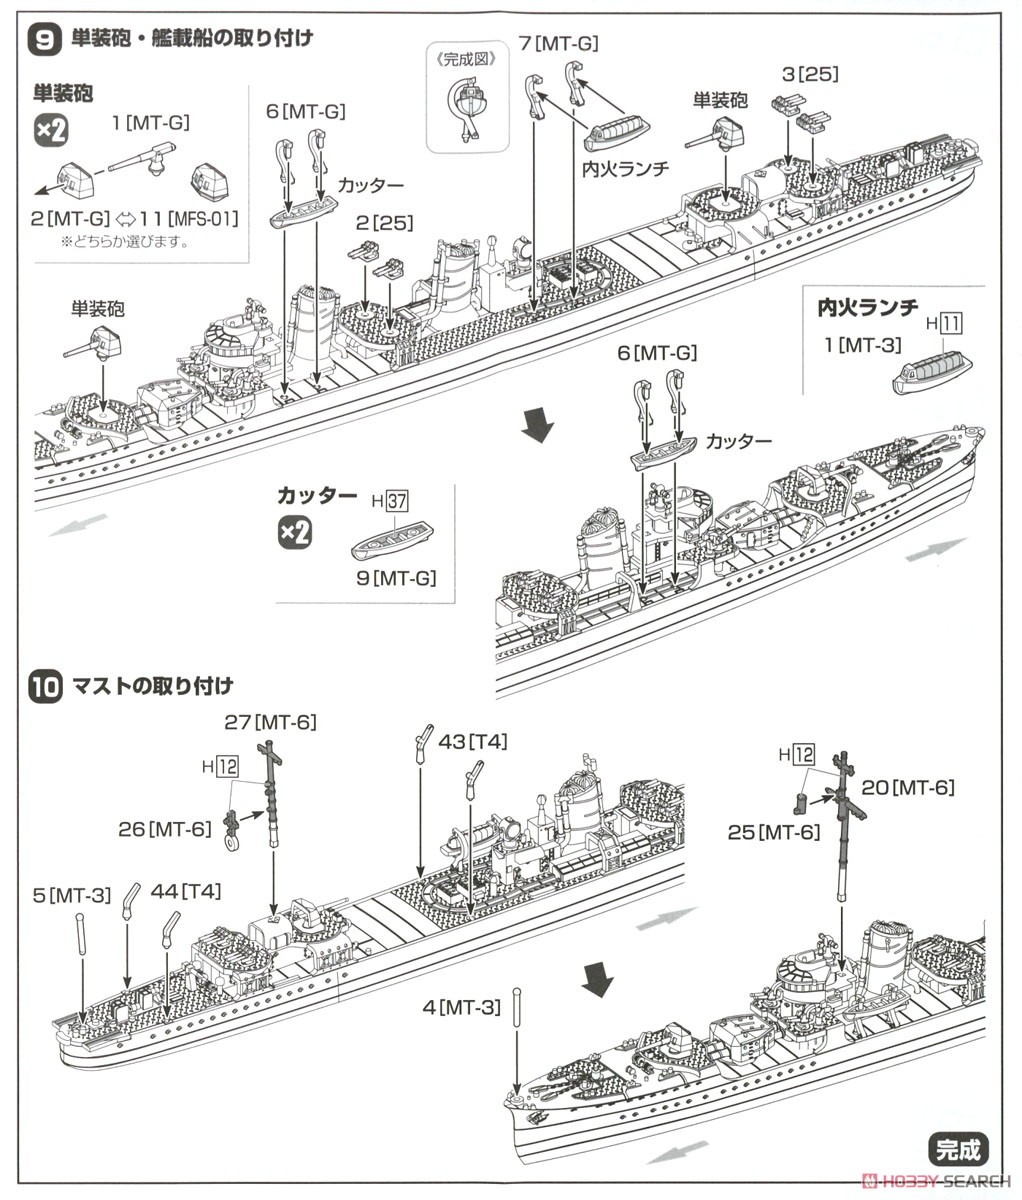 睦月型駆逐艦 文月 1943 (プラモデル) 設計図5